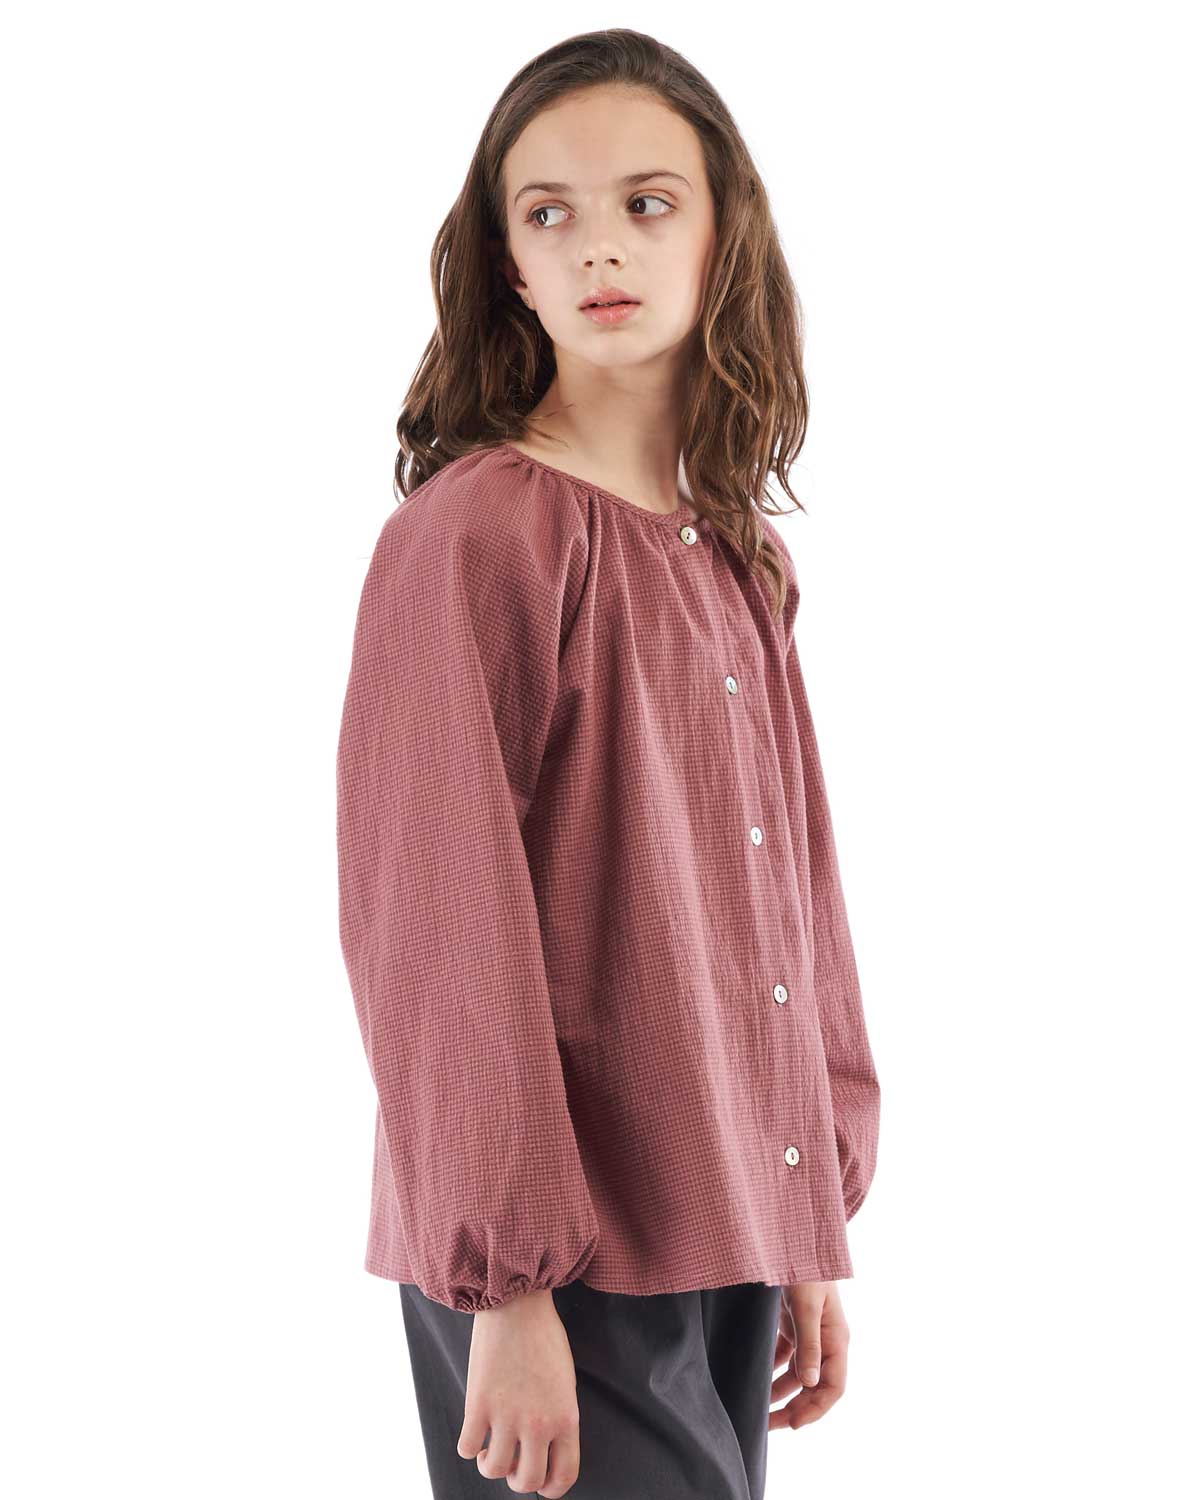 Blusa de niña Mishti de cuadros en color rosa y gris y manga amplia con goma en el puño 5